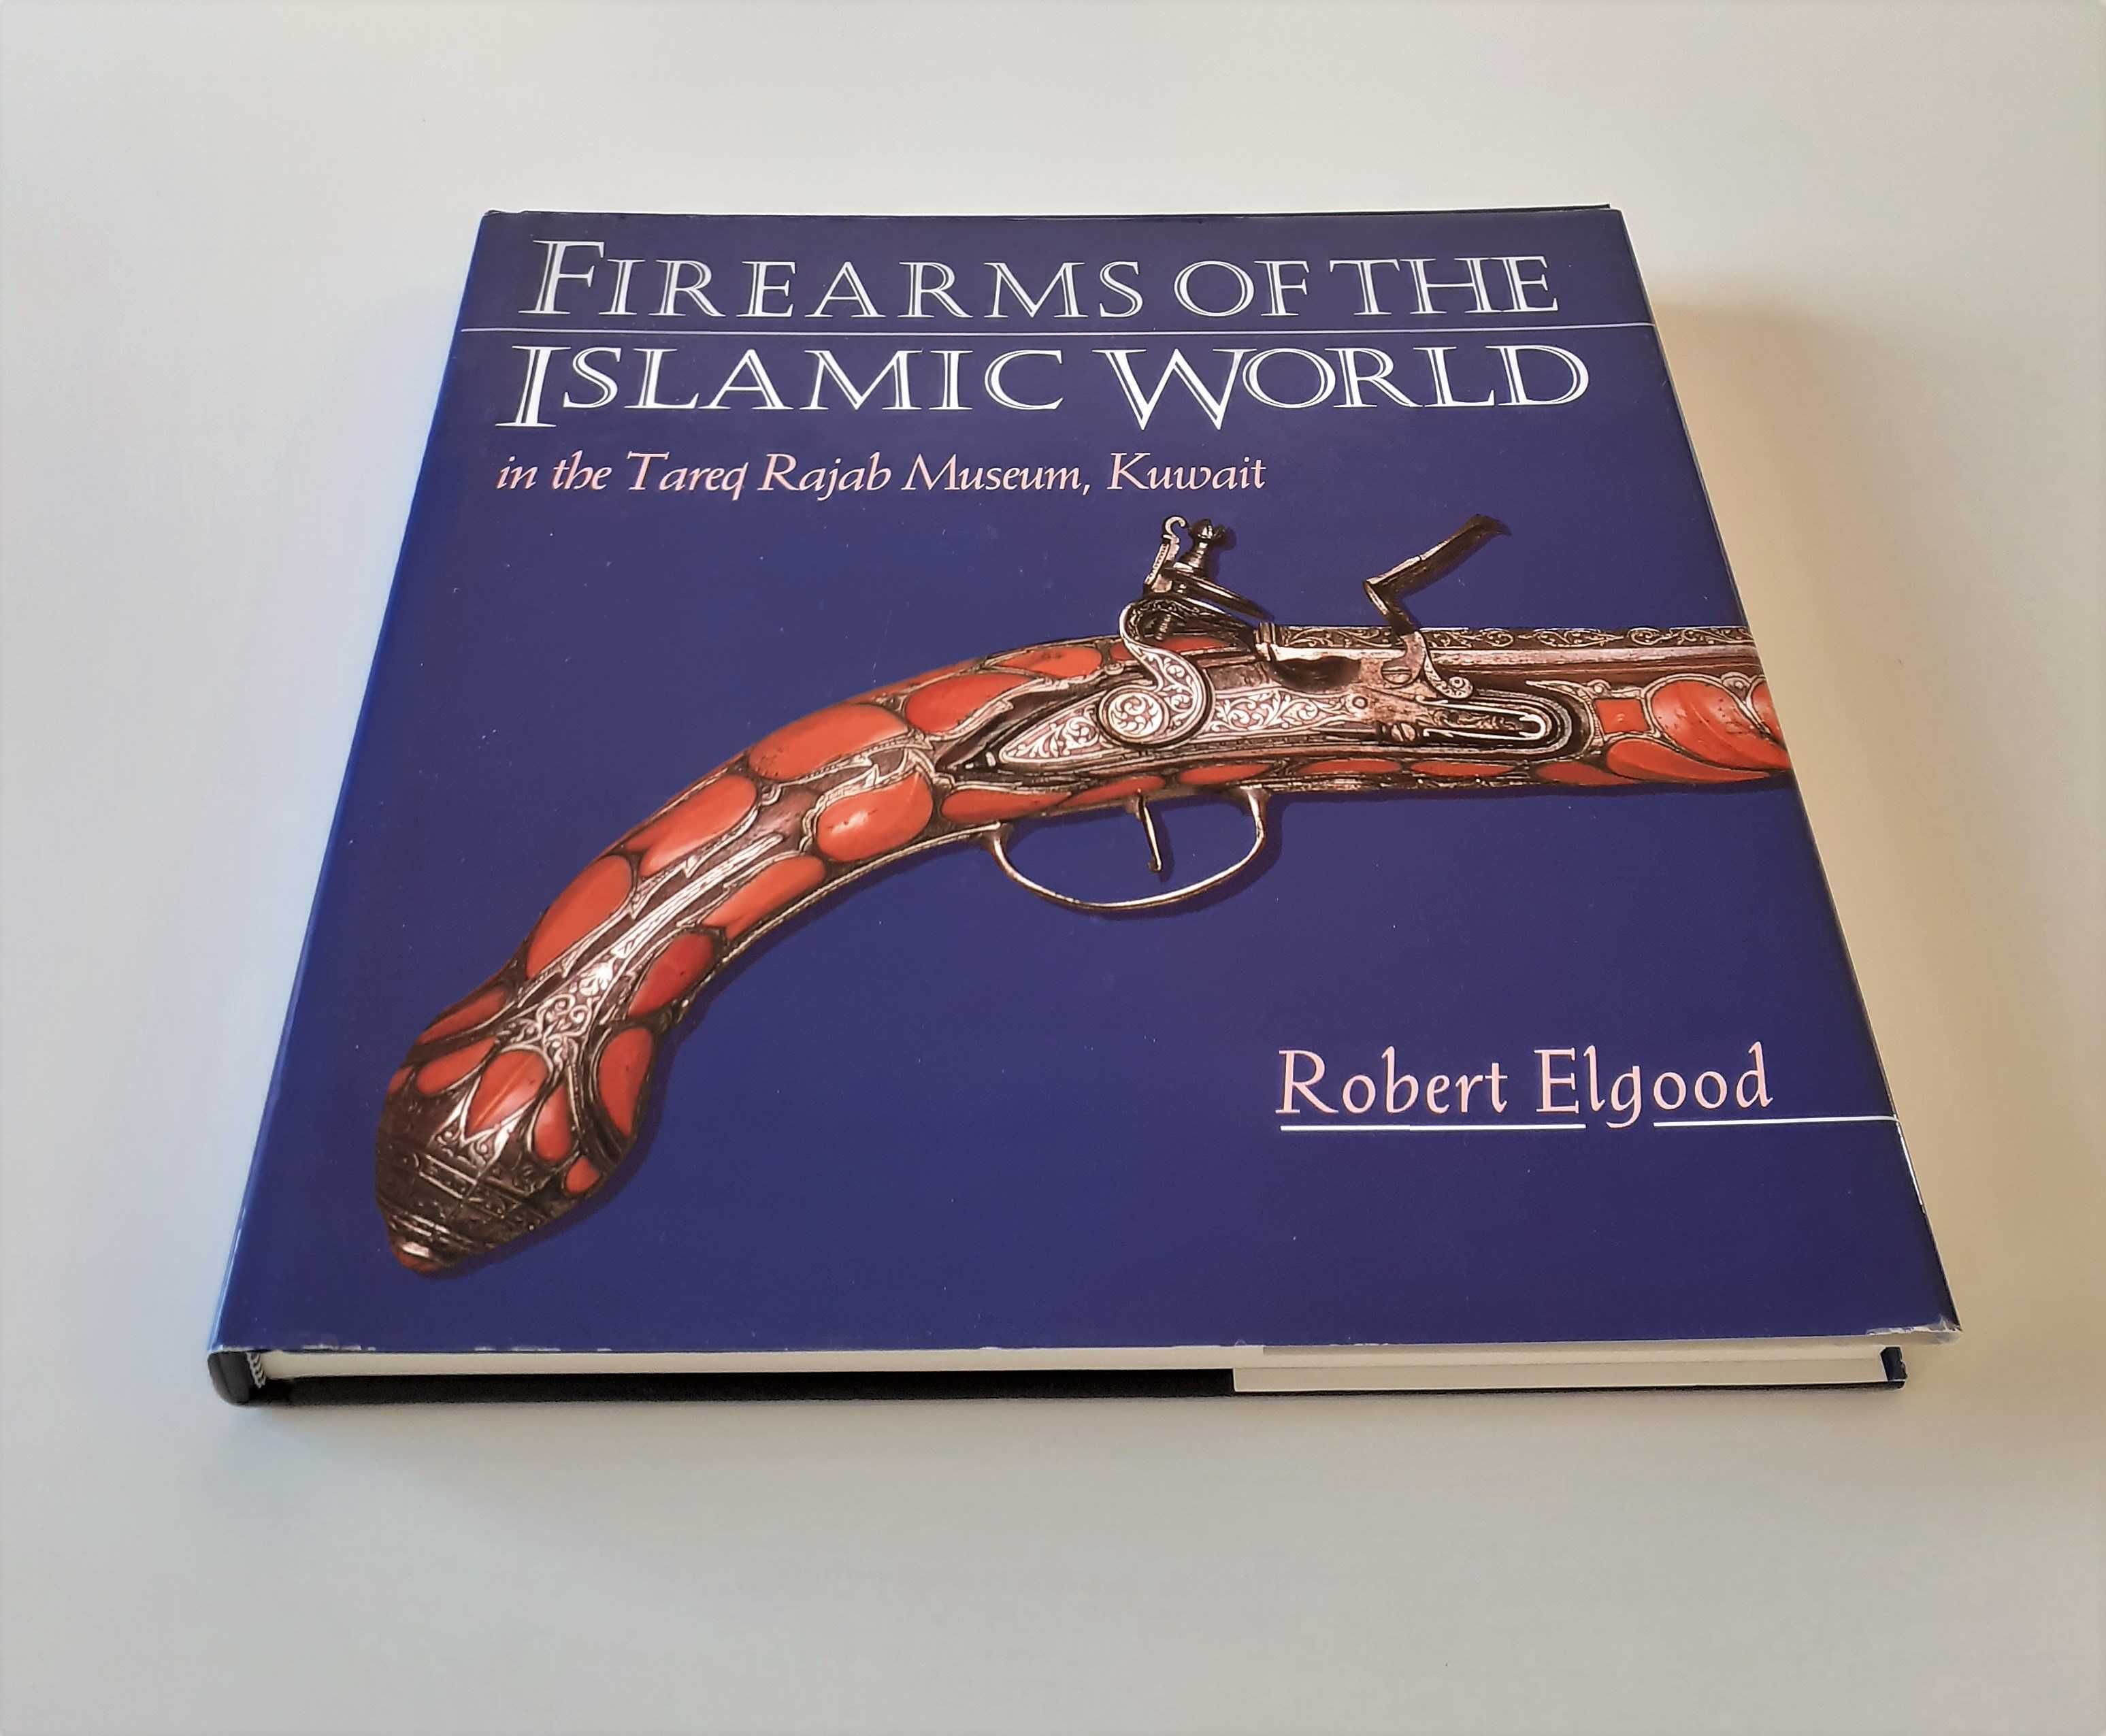 Broń palna świata islamu w Muzeum Tareq Rajab (w j. ang) Robert Elgood